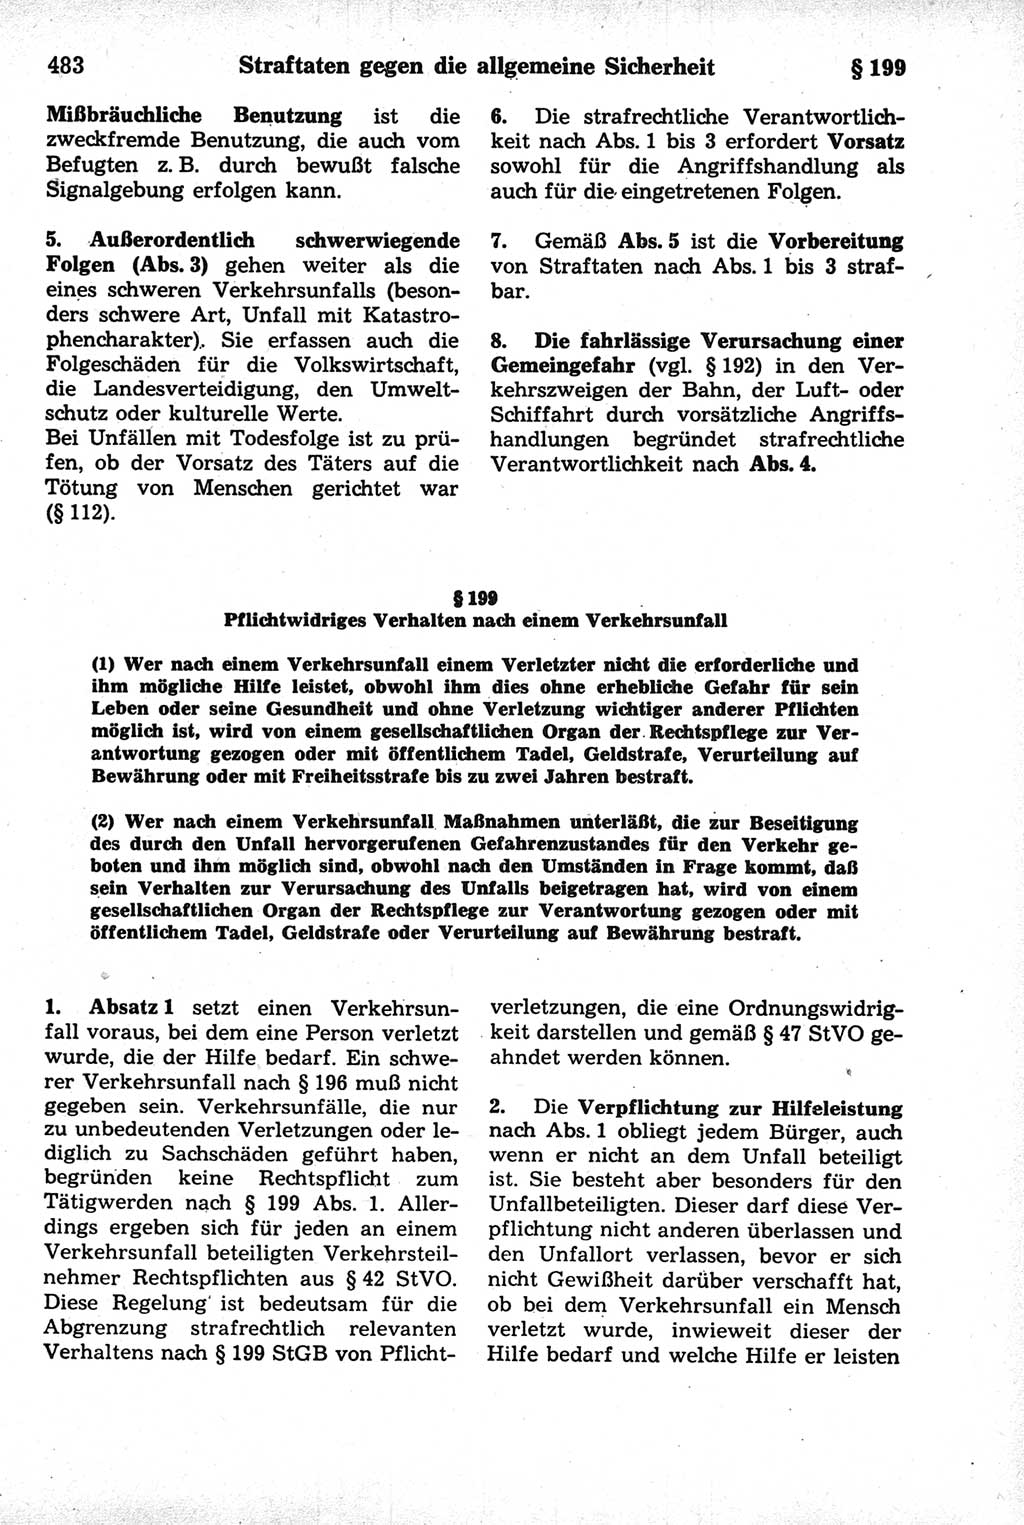 Strafrecht der Deutschen Demokratischen Republik (DDR), Kommentar zum Strafgesetzbuch (StGB) 1981, Seite 483 (Strafr. DDR Komm. StGB 1981, S. 483)